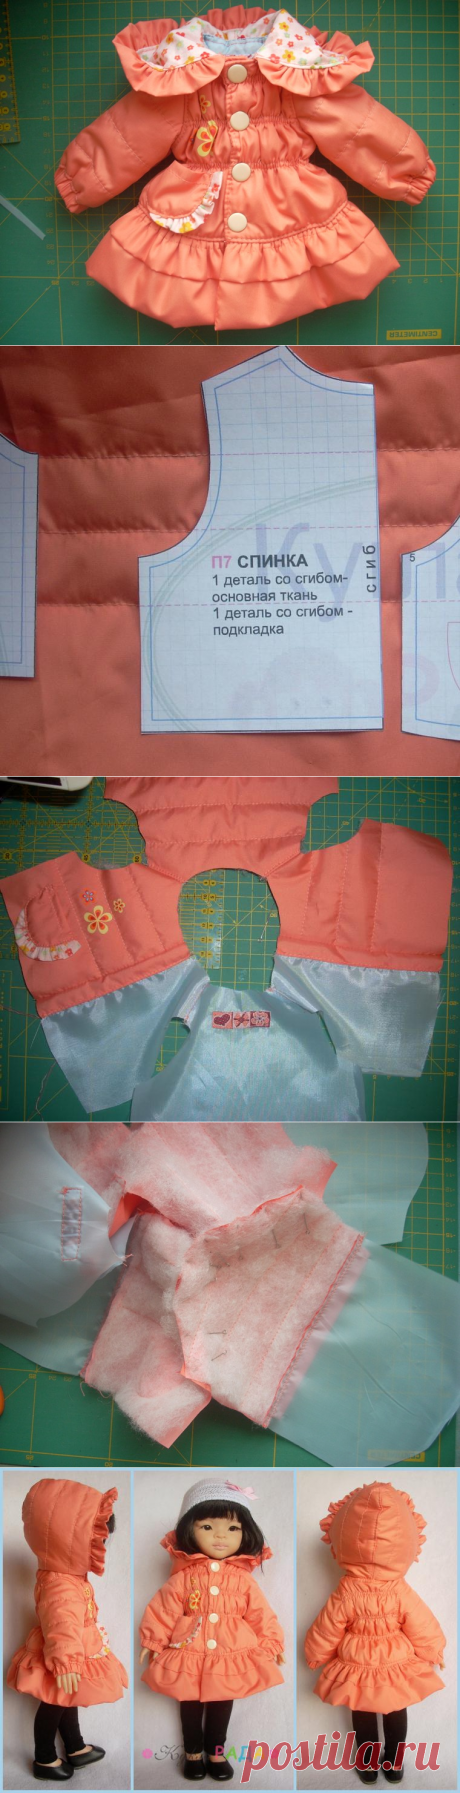 Процесс пошива курточки для куклы 32 см. Выкройка П7 - Ярмарка Мастеров - ручная работа, handmade